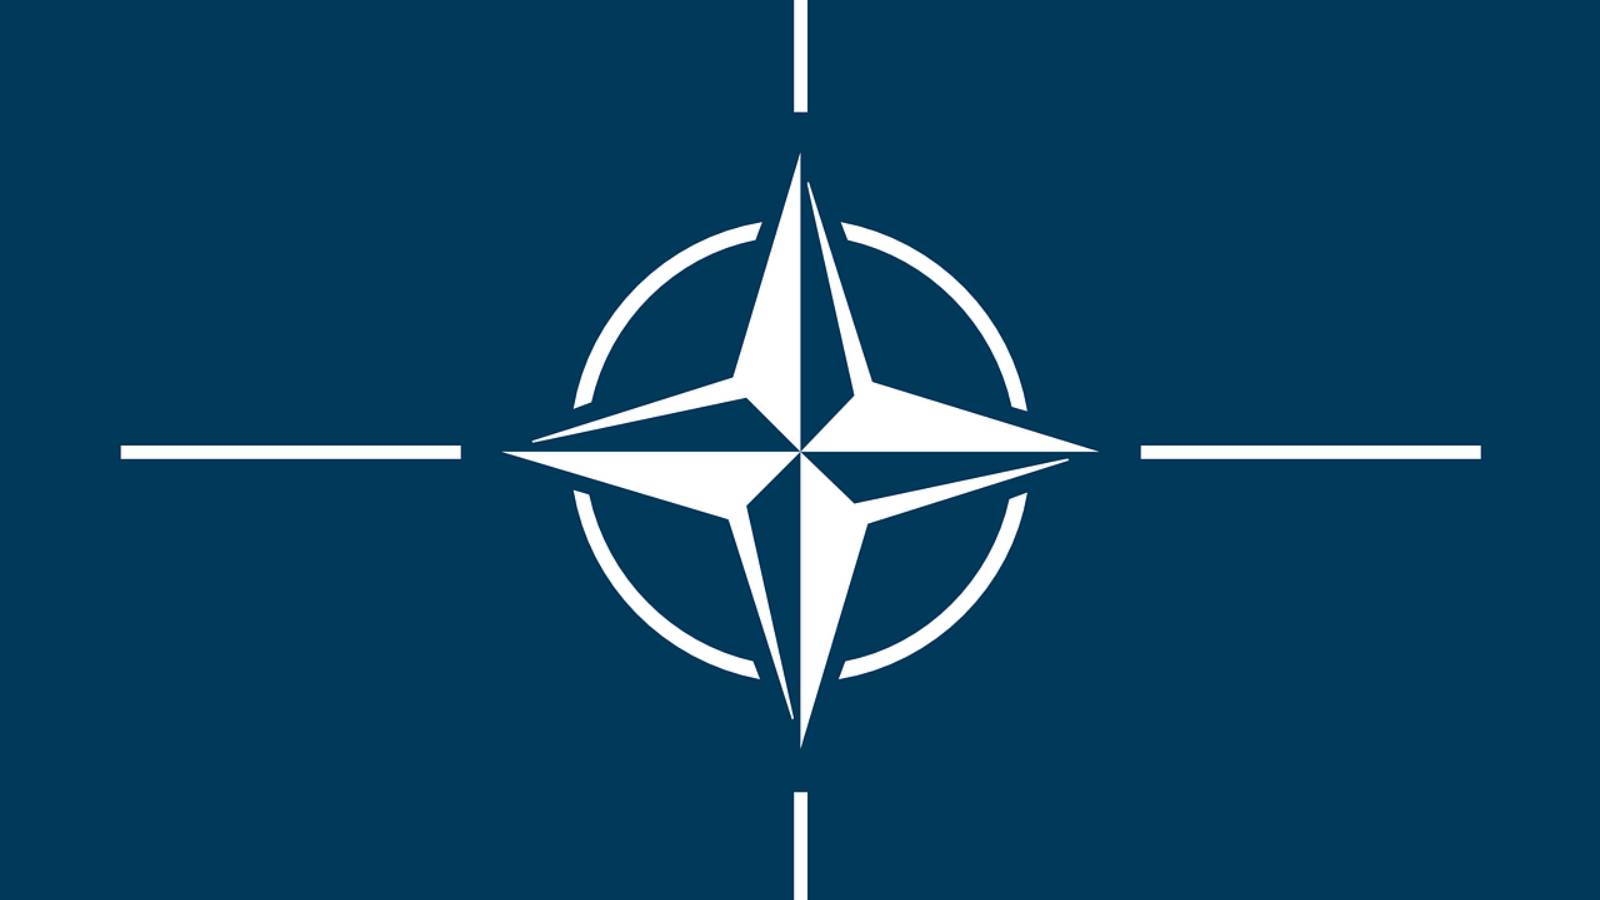 23 pays de l'OTAN ont ratifié l'adhésion de la Finlande et de la Suède